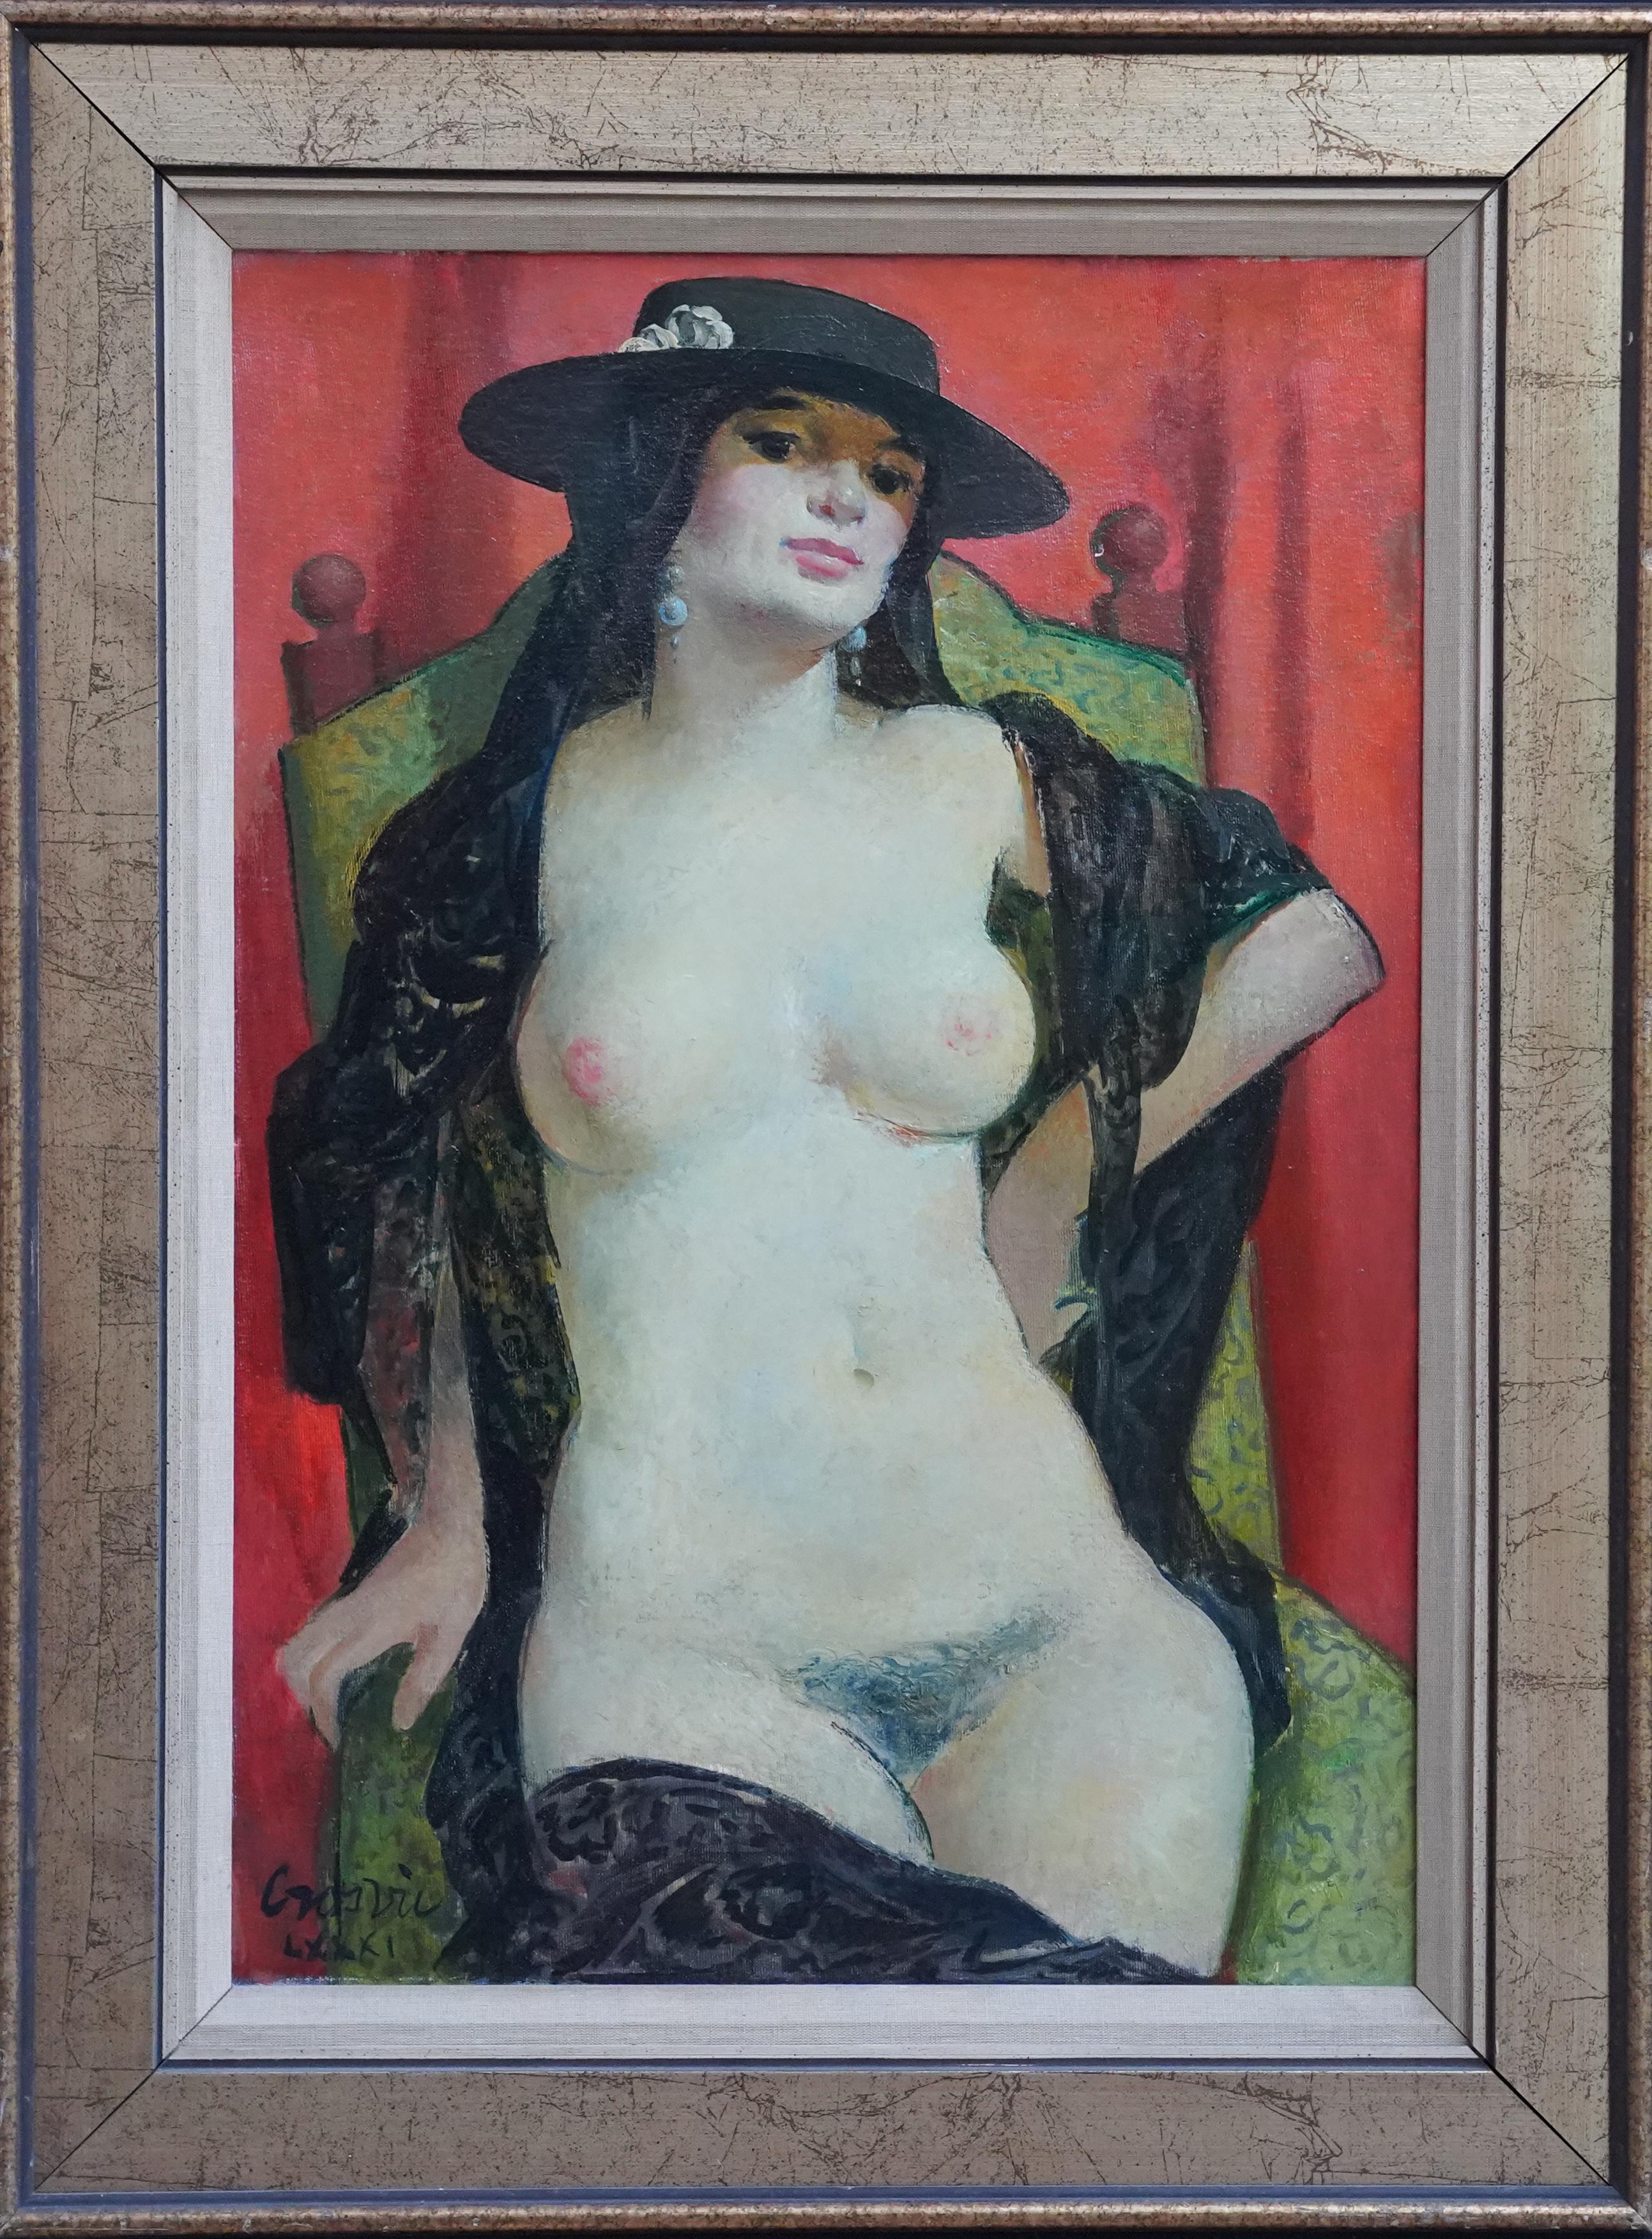 Nude Painting William Crosbie - Portrait nu d'une femme espagnole - Peinture à l'huile d'un portrait de femme écossaise